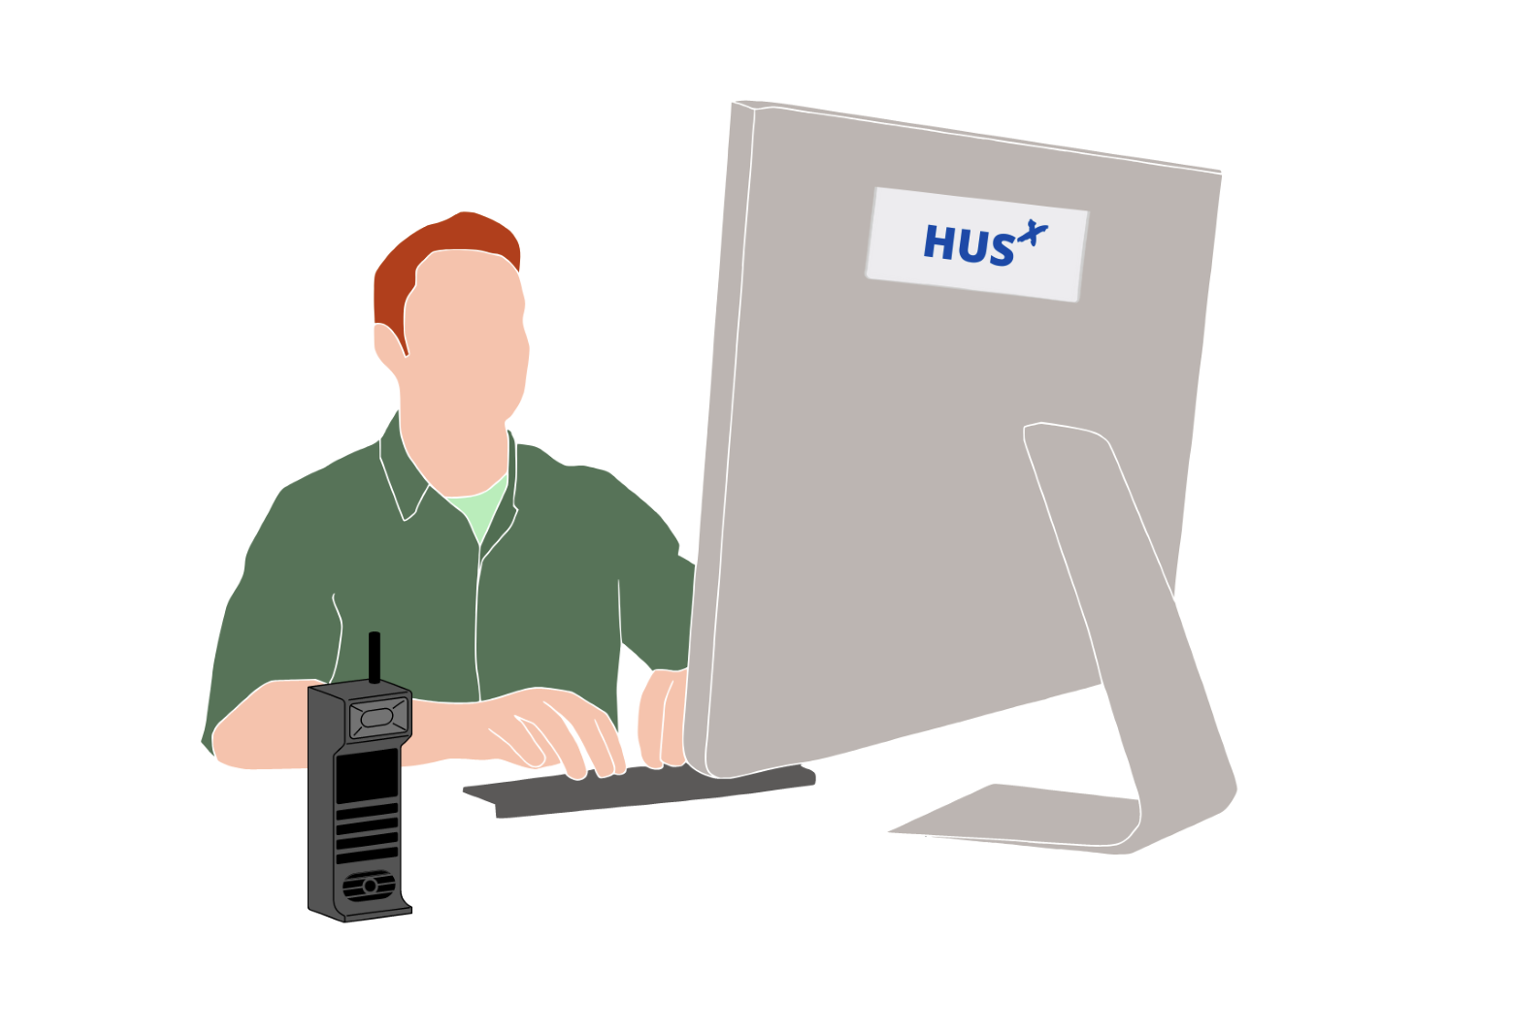 Grafiikkakuvassa henkilö istuu tietokoneella radiopuhelin edessään. Tietokoneessa lukee "HUS".